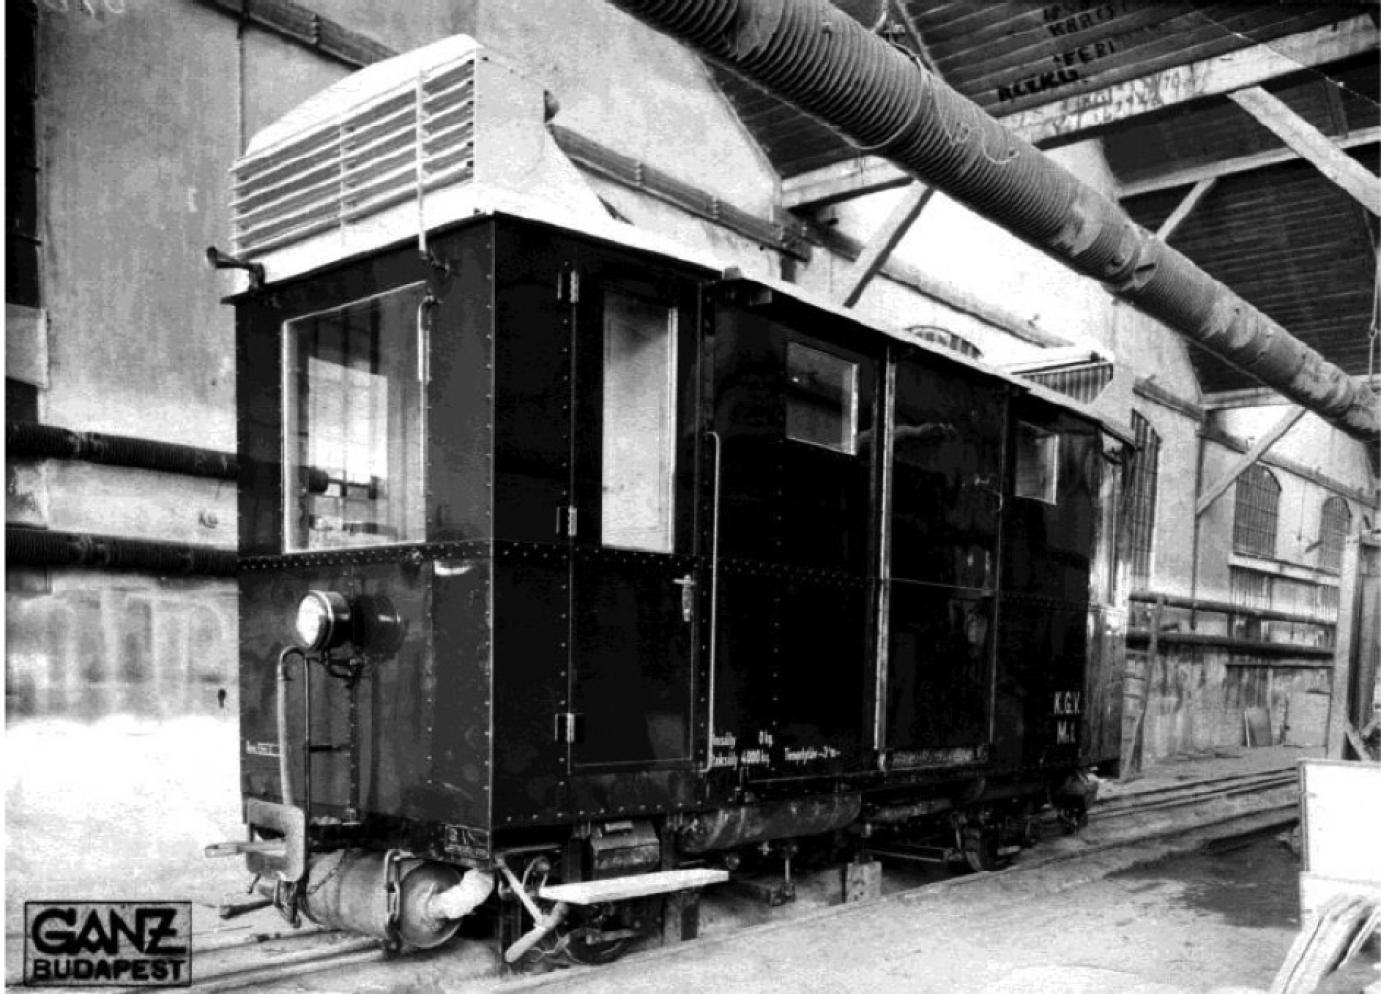 Fahrzeug mit der Betriebsnummer Mn 1 in der Ganz-Fabrik (Quelle: Fortepan)